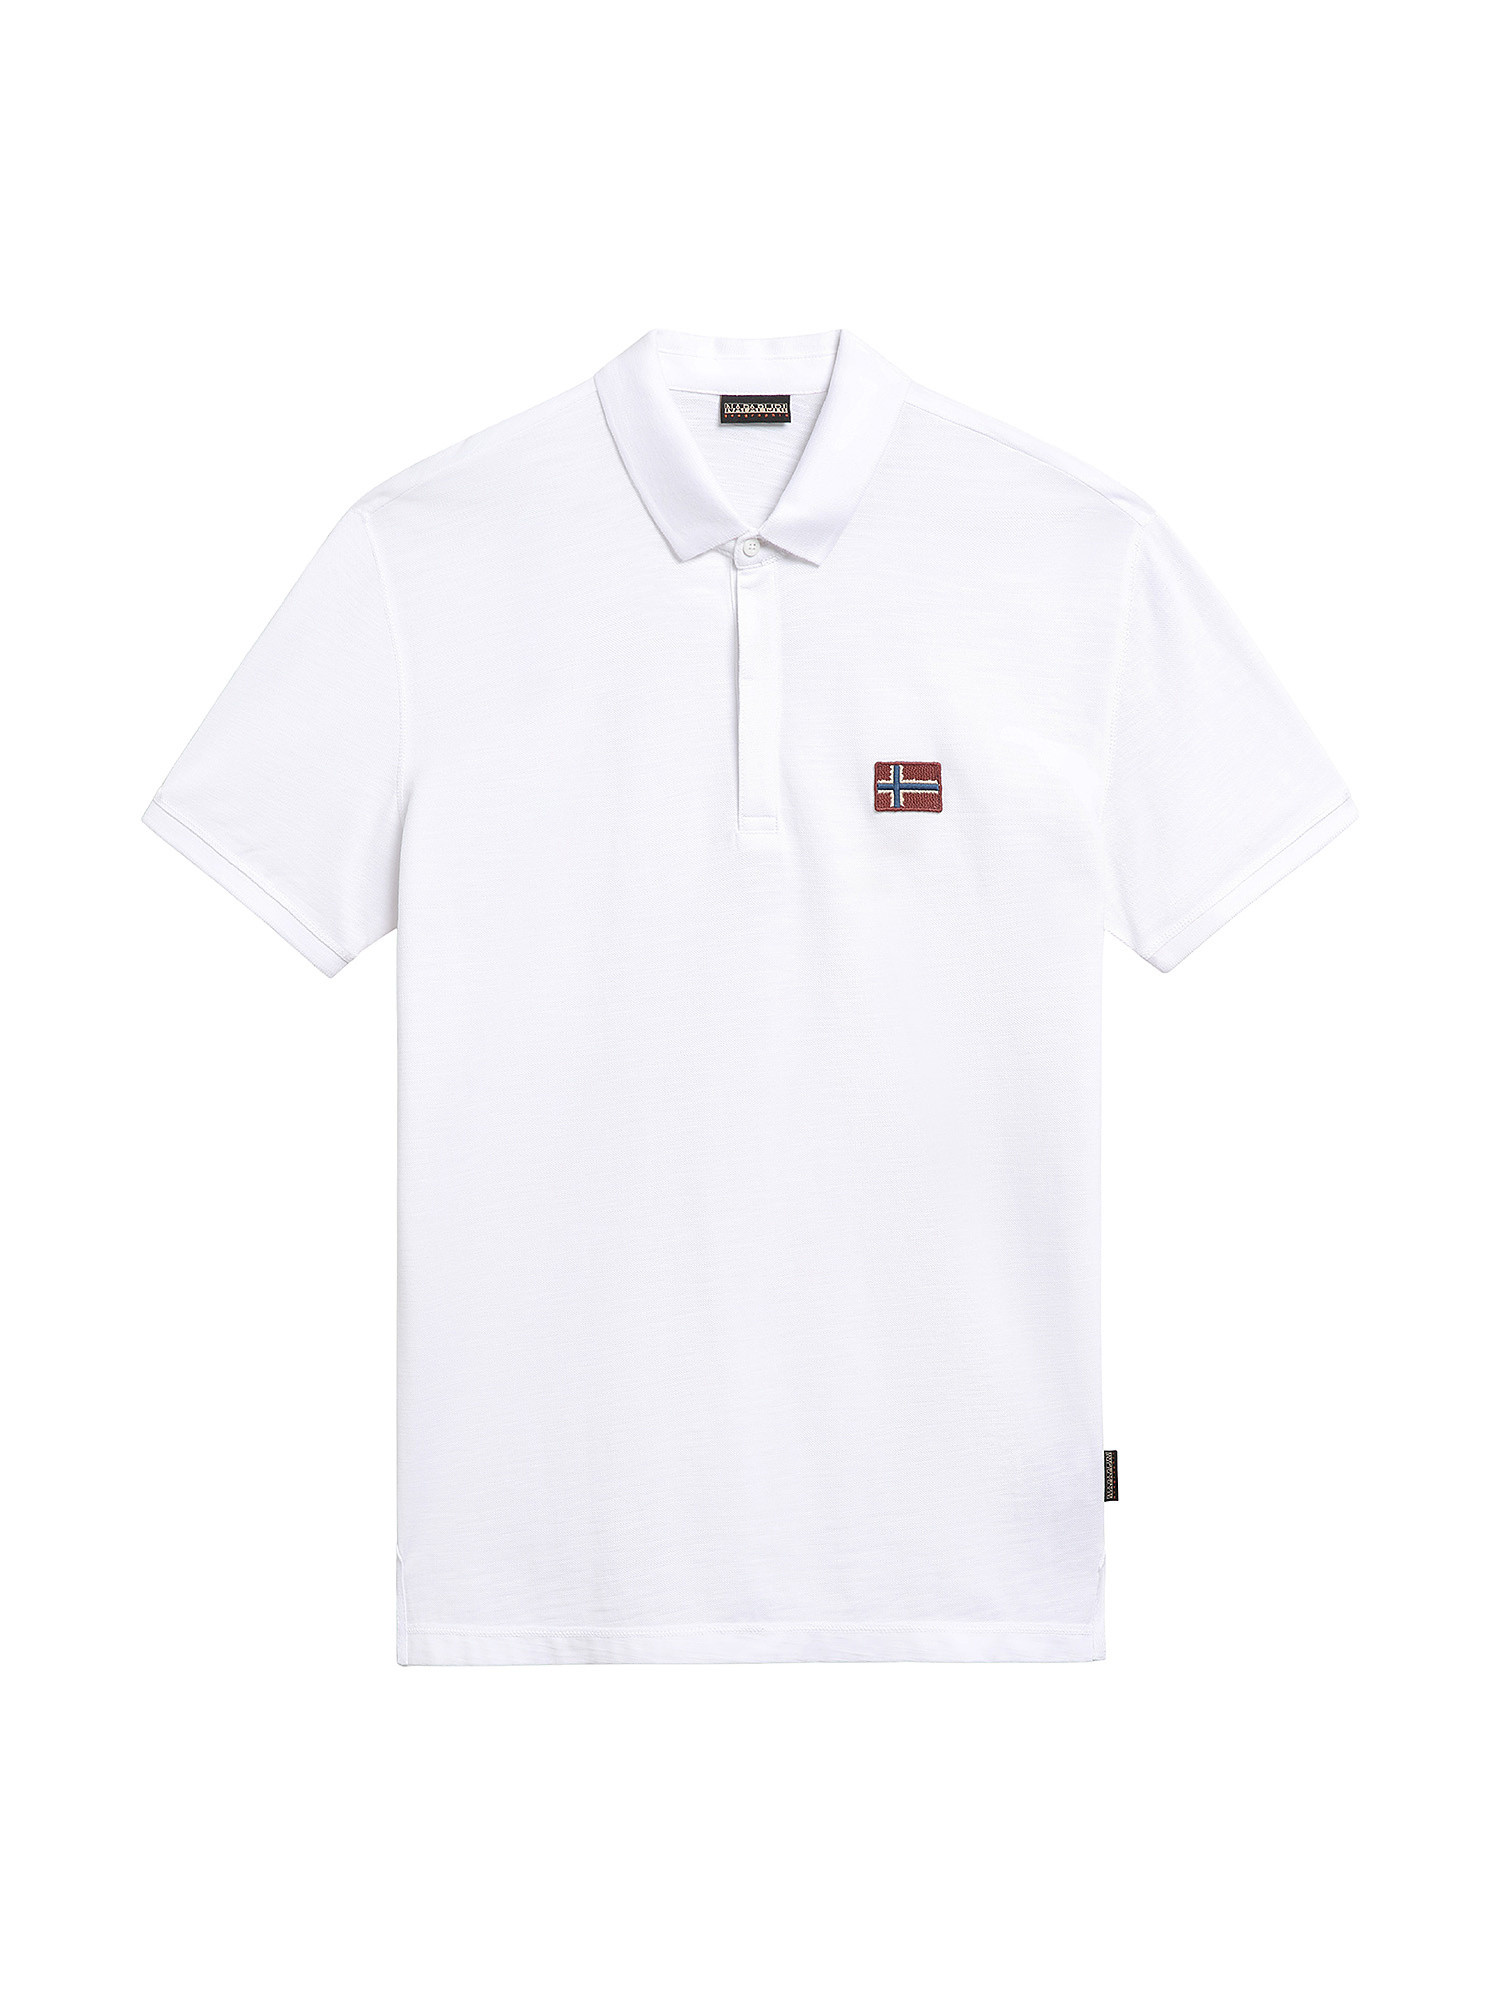 Short Sleeve Polo Ebea, White, large image number 0